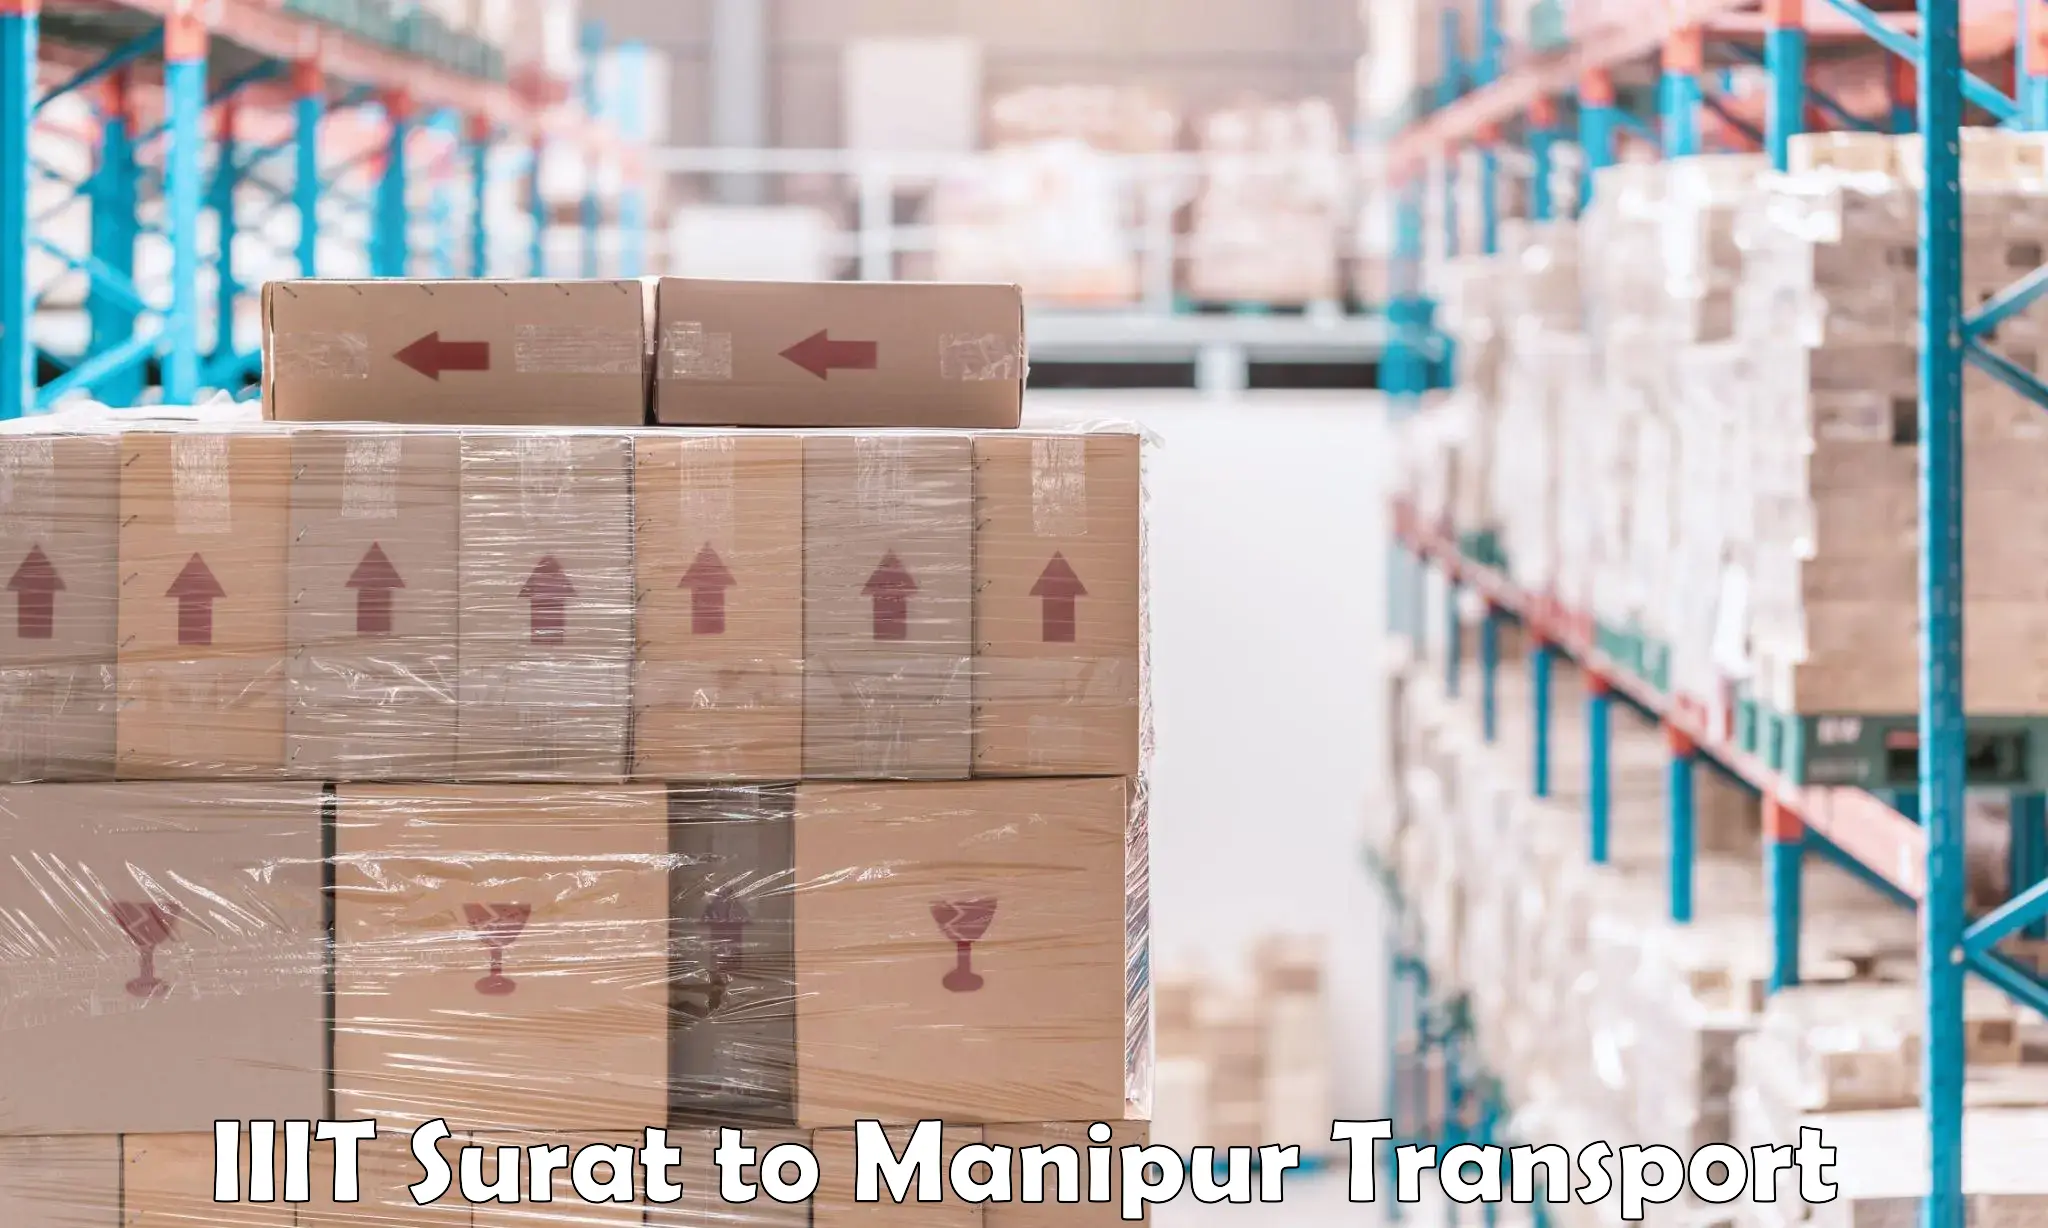 Road transport services IIIT Surat to Churachandpur